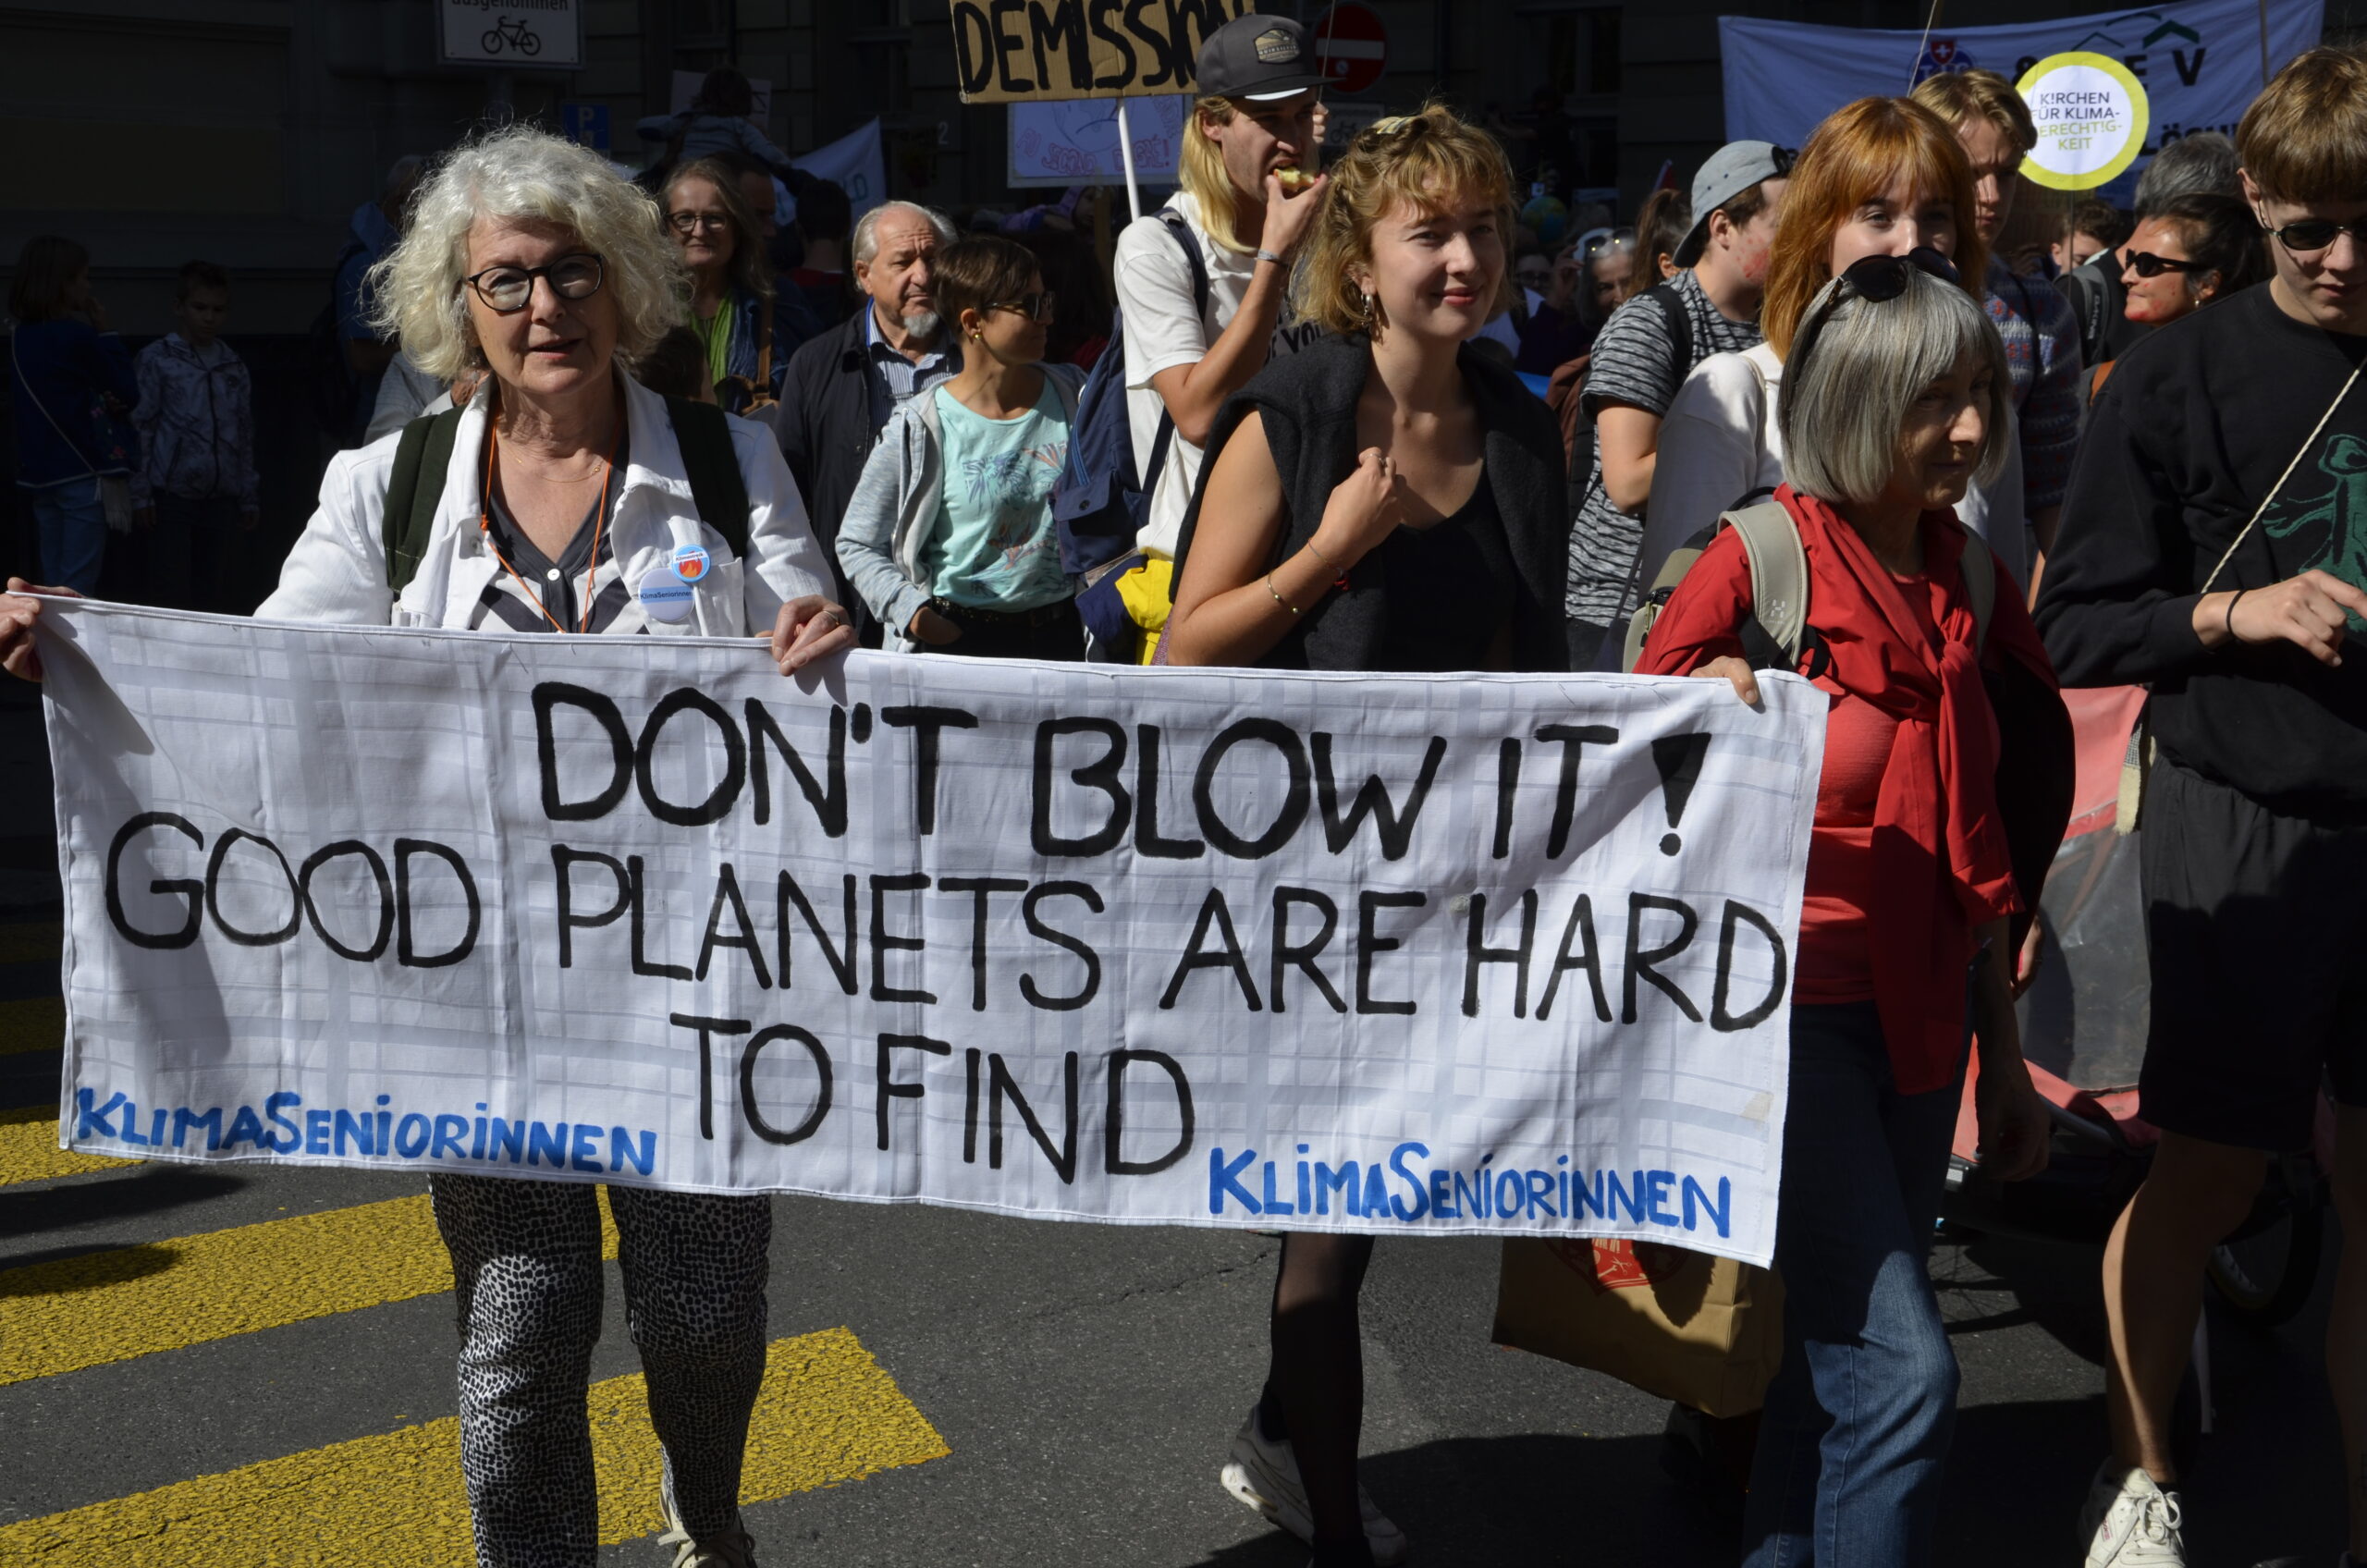 Der Kampf der Klimaseniorinnen: Ein bahnbrechender Rechtsfall für die Klimagerechtigkeit in Europa